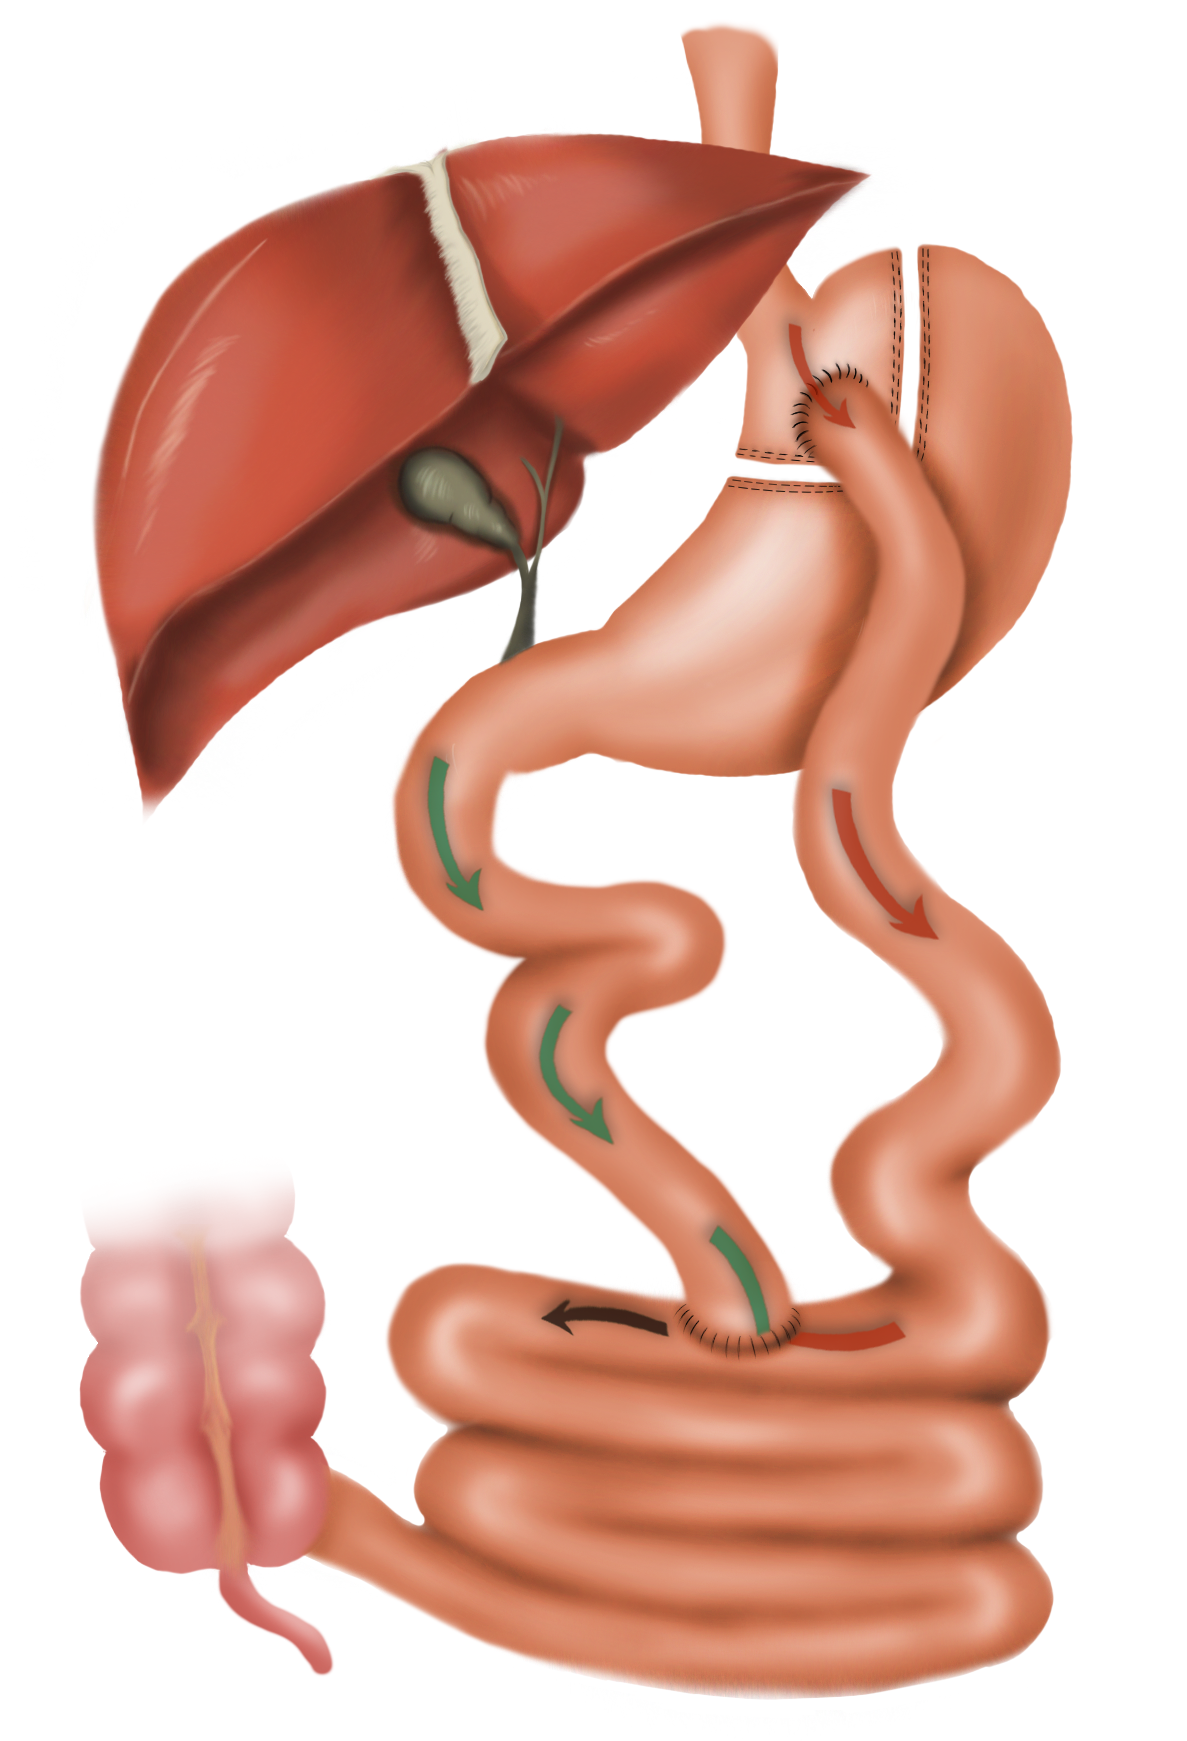 Roux-en Y gastric bypass surgery diagram